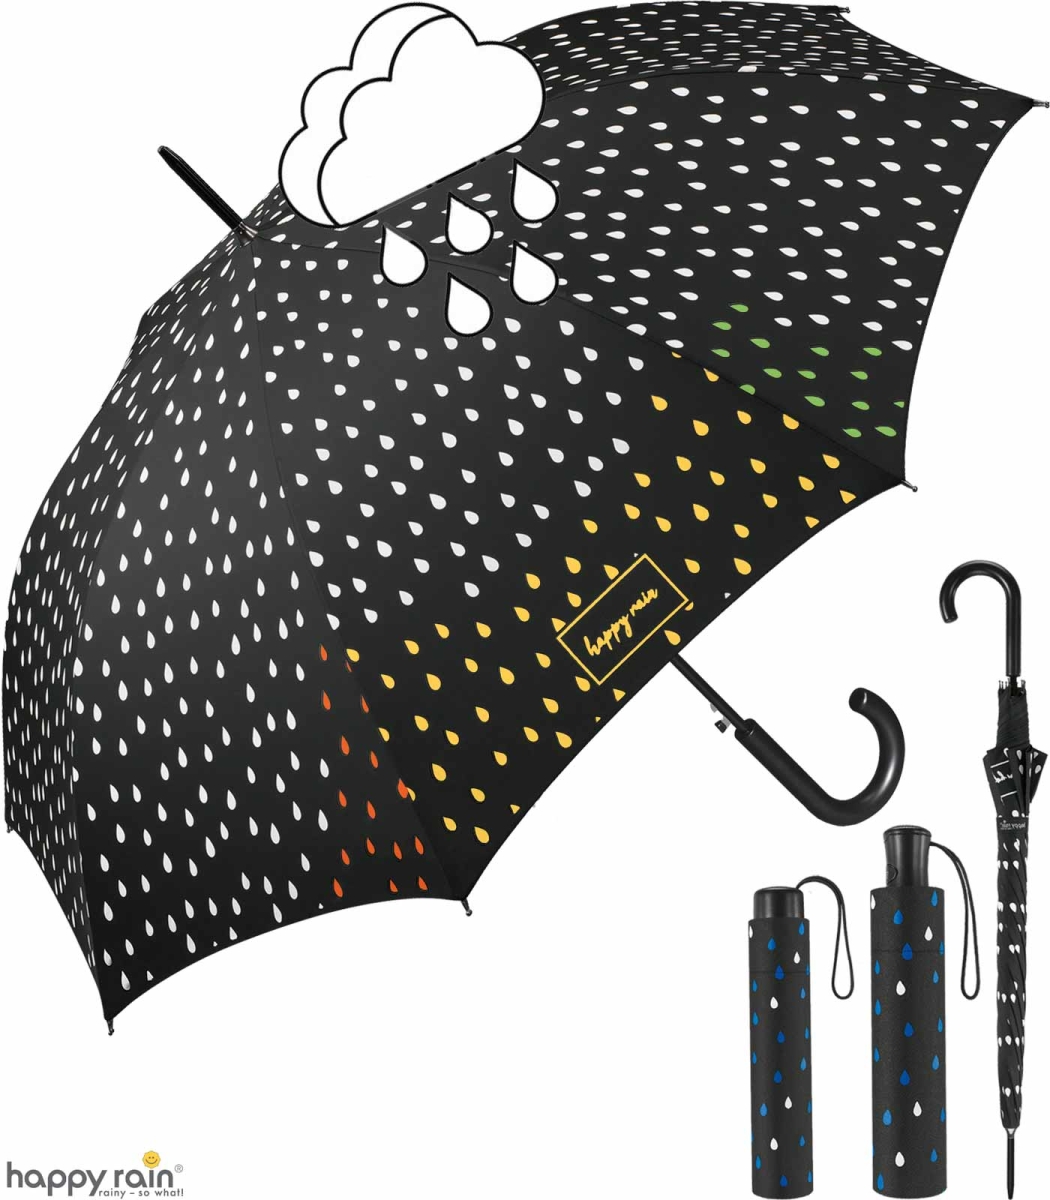 Lirener Farbwechsel Regenschirm Faltbar Kompakt Vinyl Sonnenschirm UV-Schutz Winddicht Regenschirm die Farbe Wechseln bei Nässe Windfest in Sterne-Form Kompakte Design 8 Verstärkten Rippen 